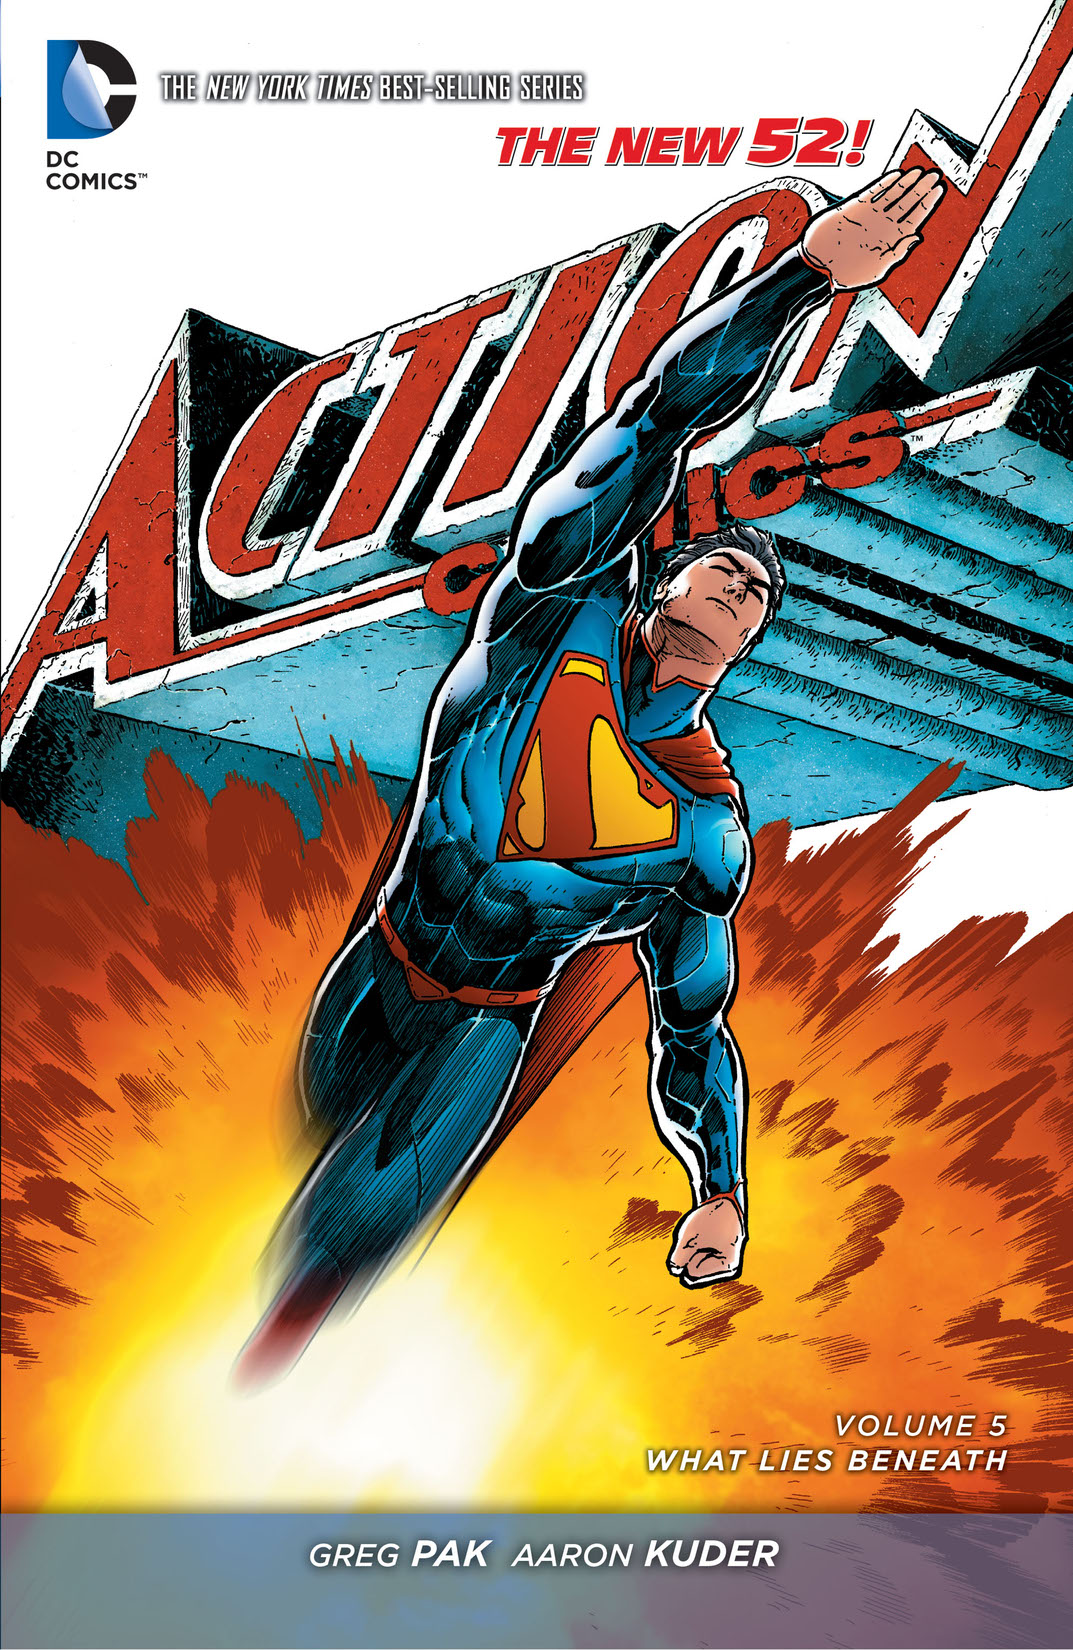 Superman - Action Comics Vol. 5: What Lies Beneath preview images